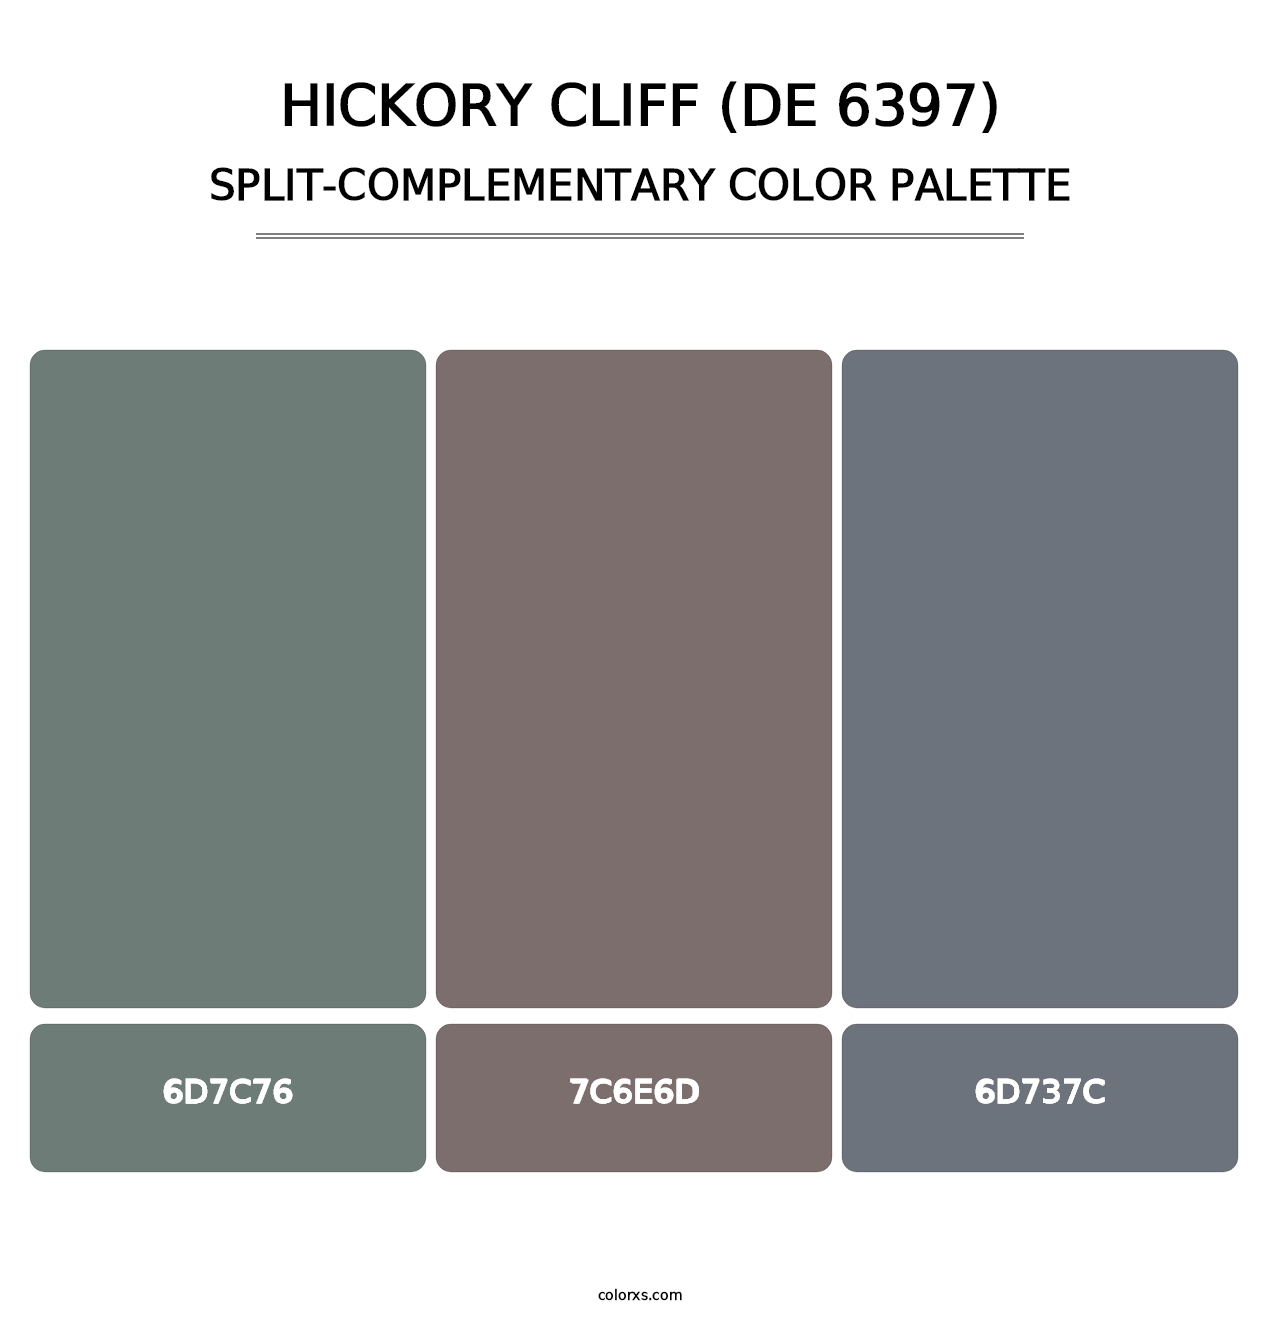 Hickory Cliff (DE 6397) - Split-Complementary Color Palette